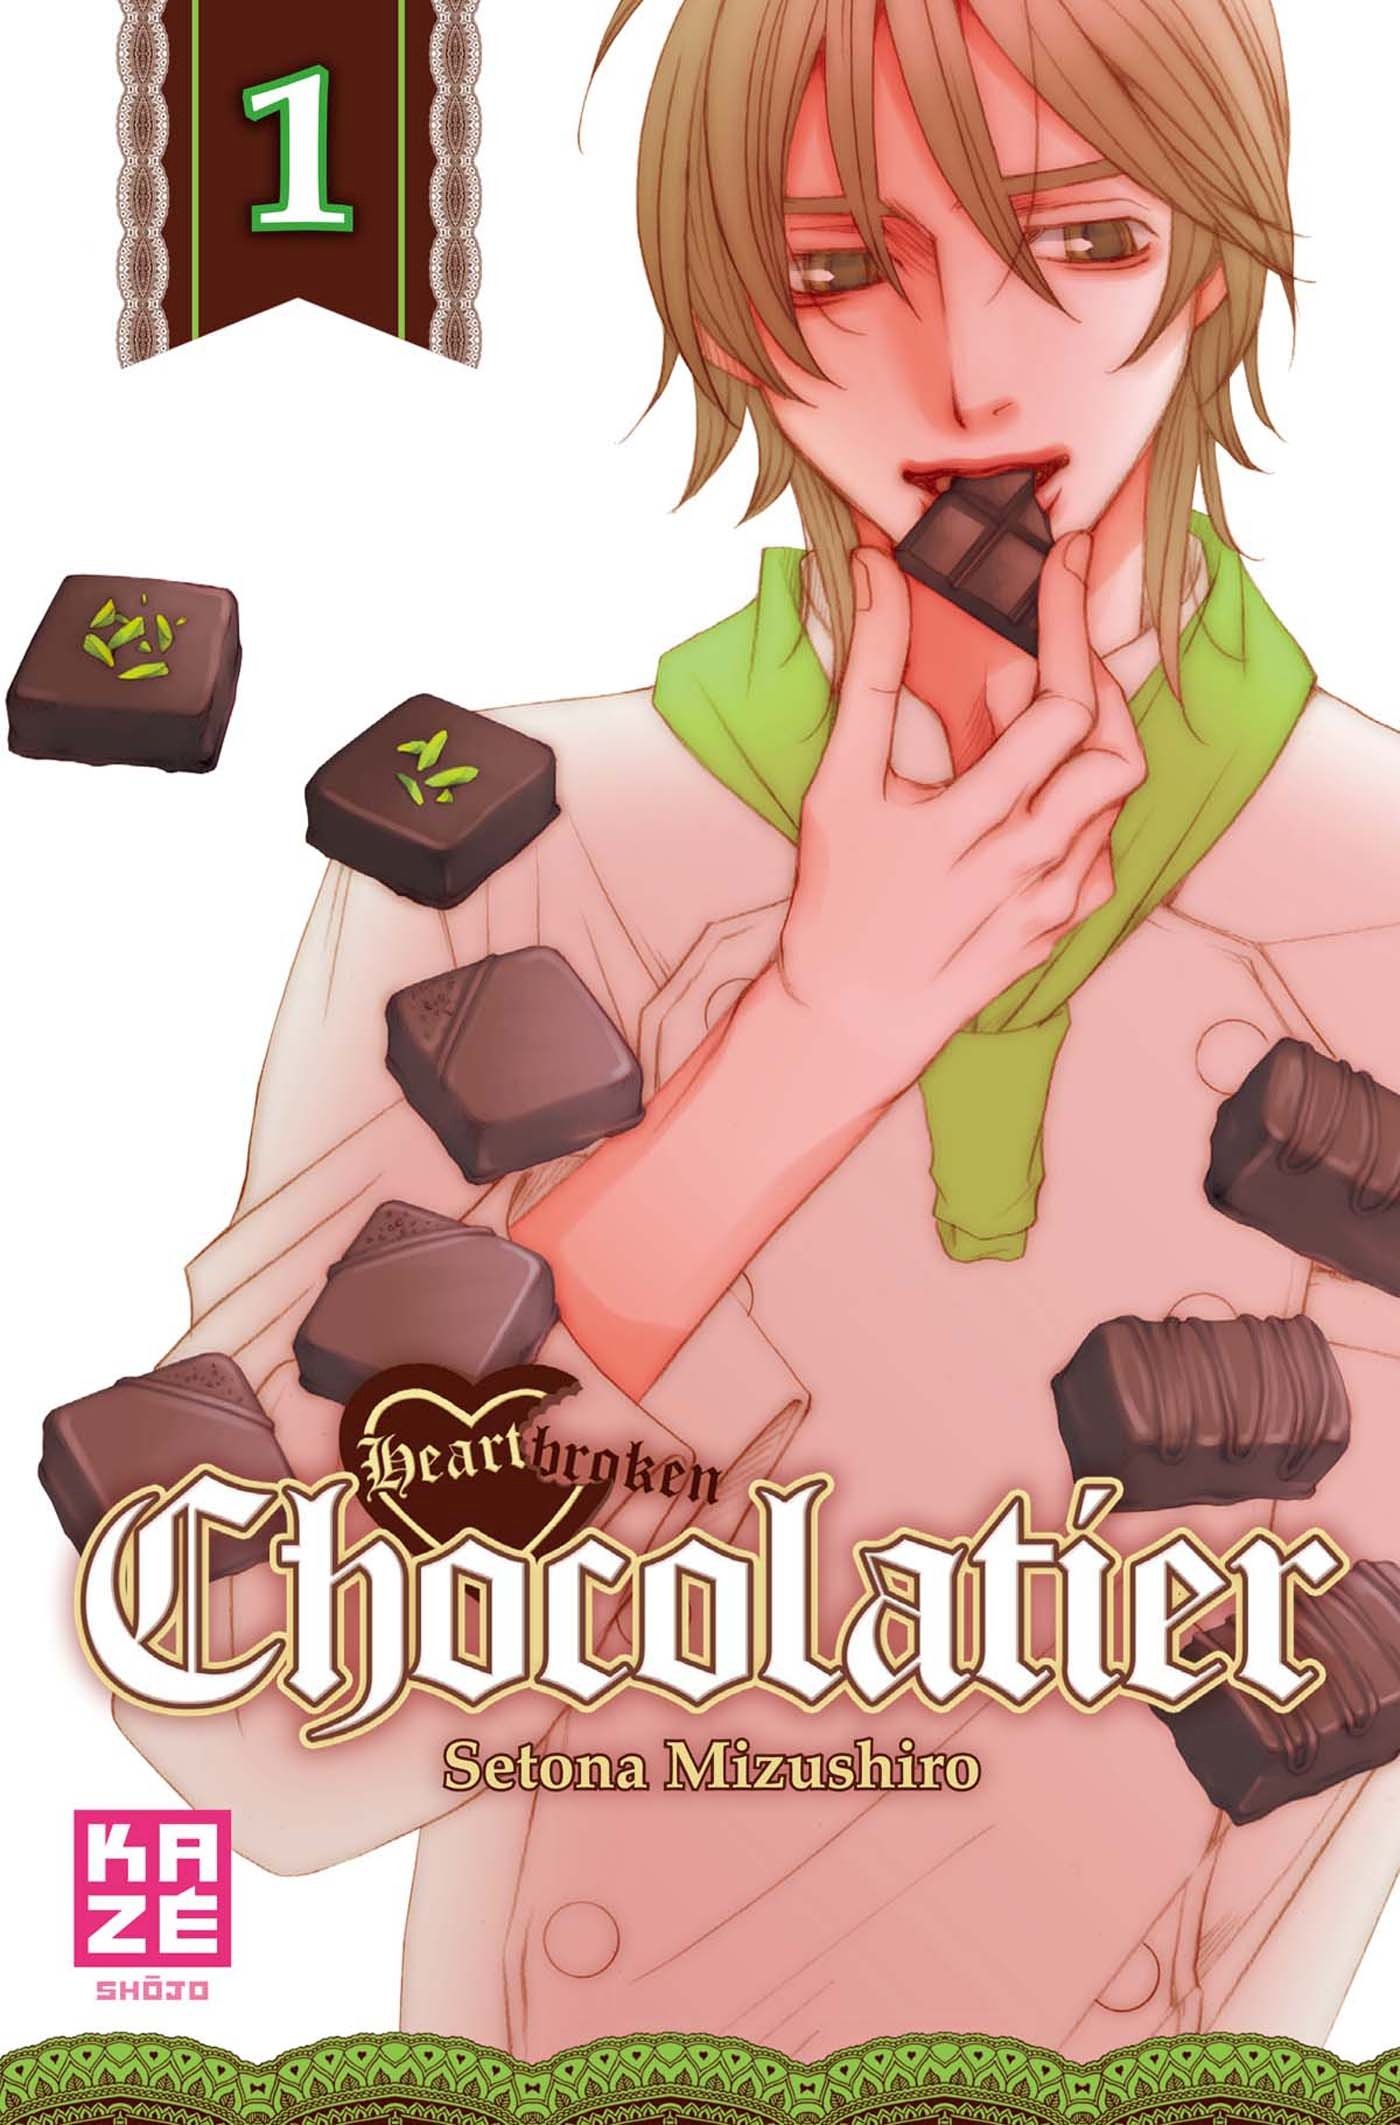 heartbrokenchocolatier1